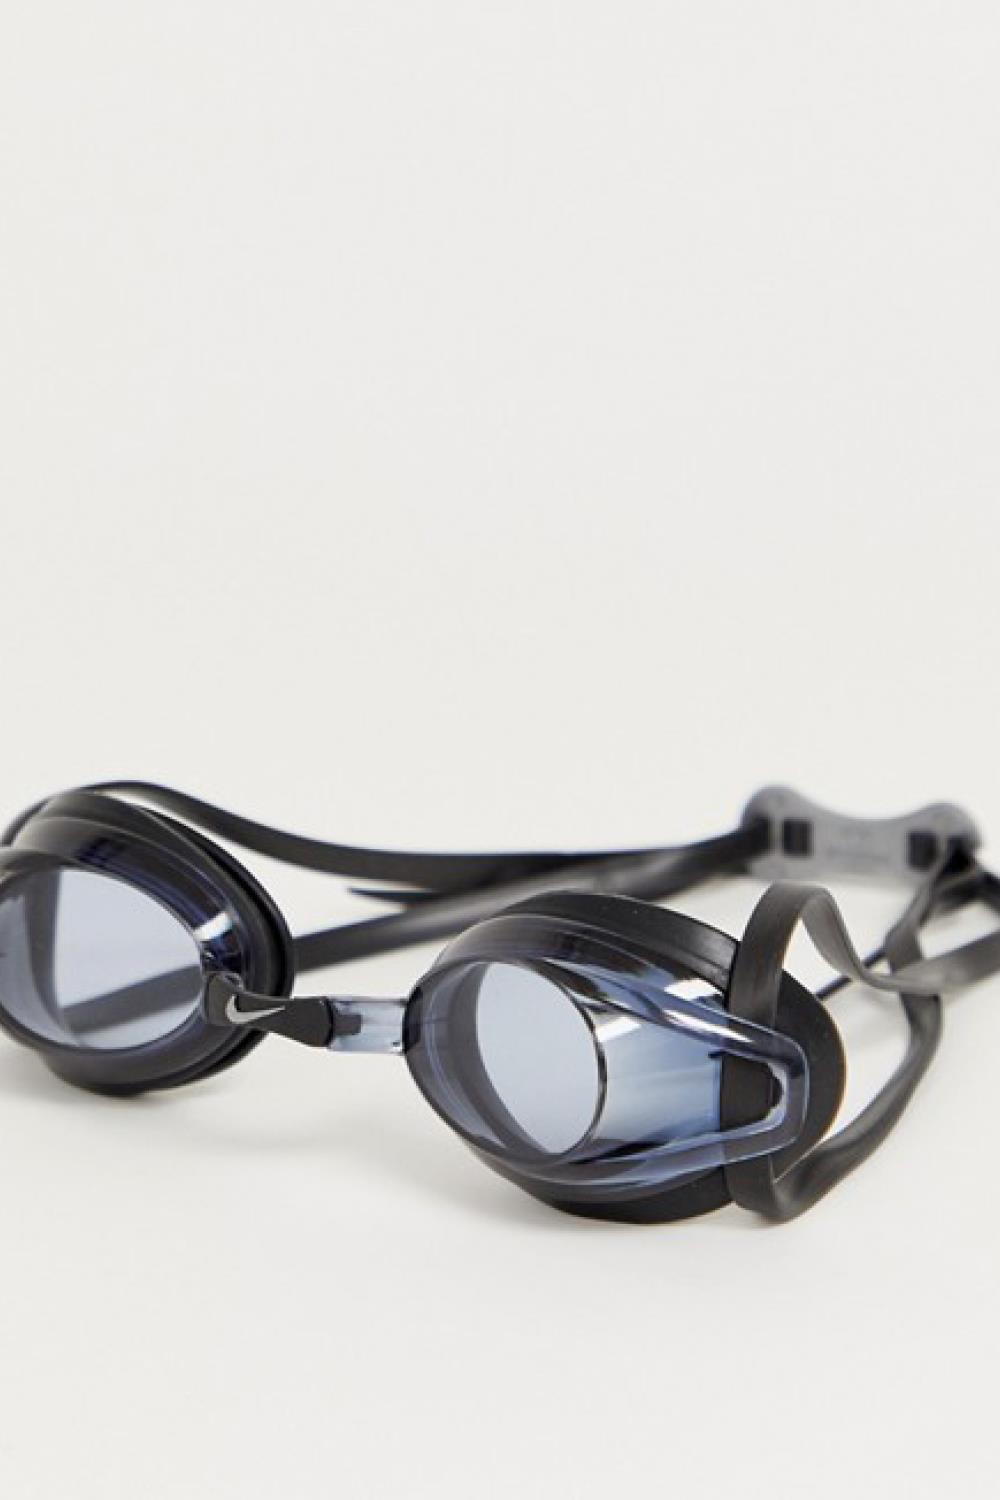 ropa de moda natación gafas nike 16,99€